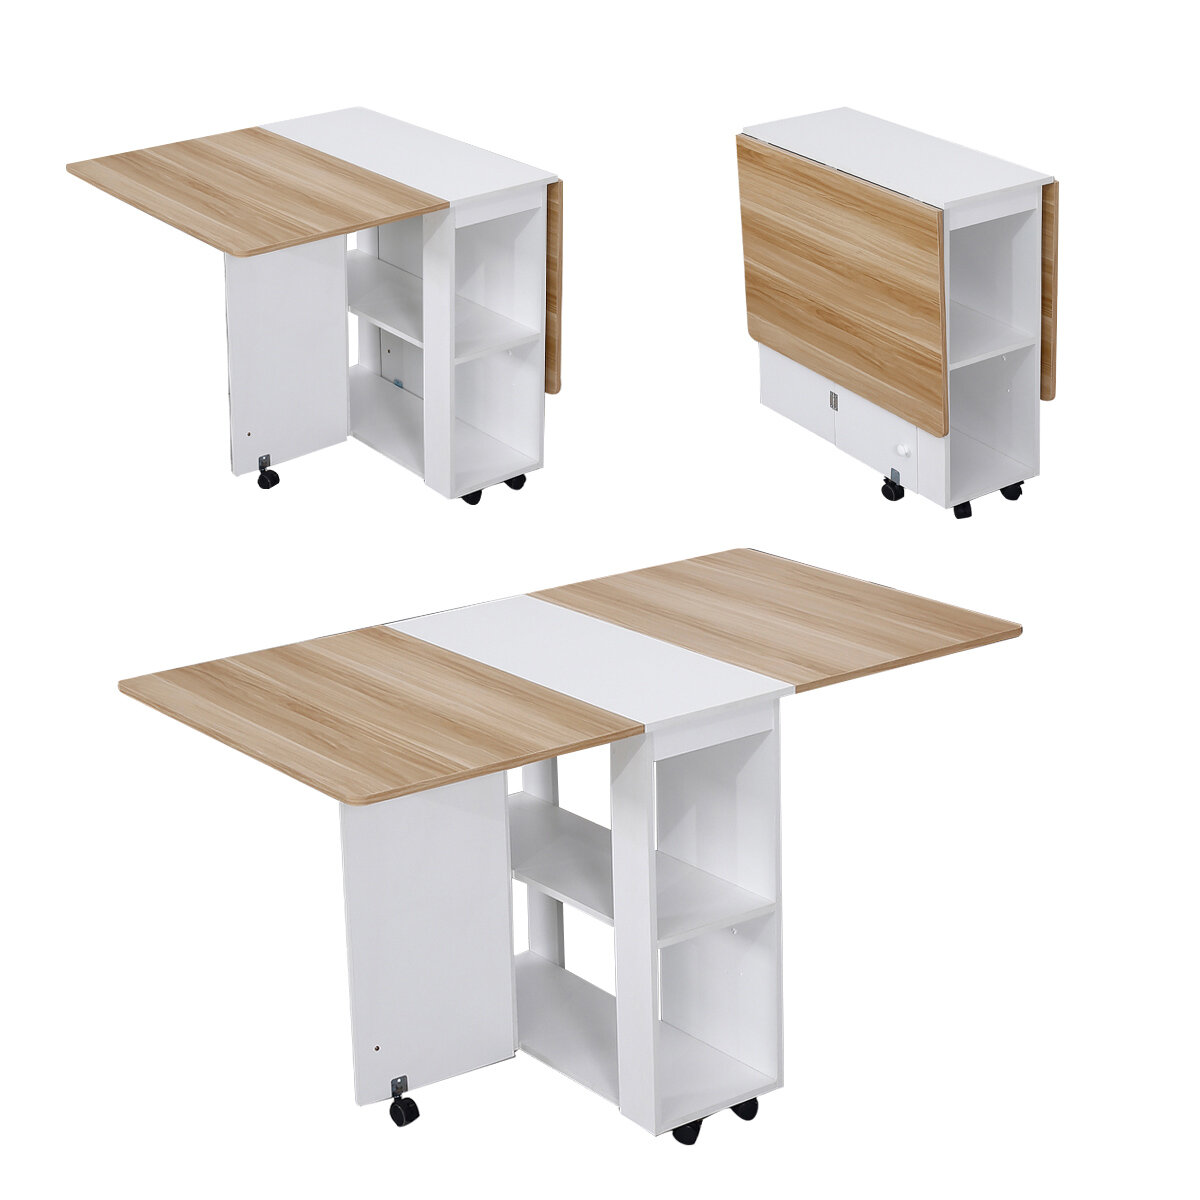 W1400 * D800 * H740MM Table pliante domestique Table multifonctionnelle simple rectangulaire mobile avec 4 tabourets